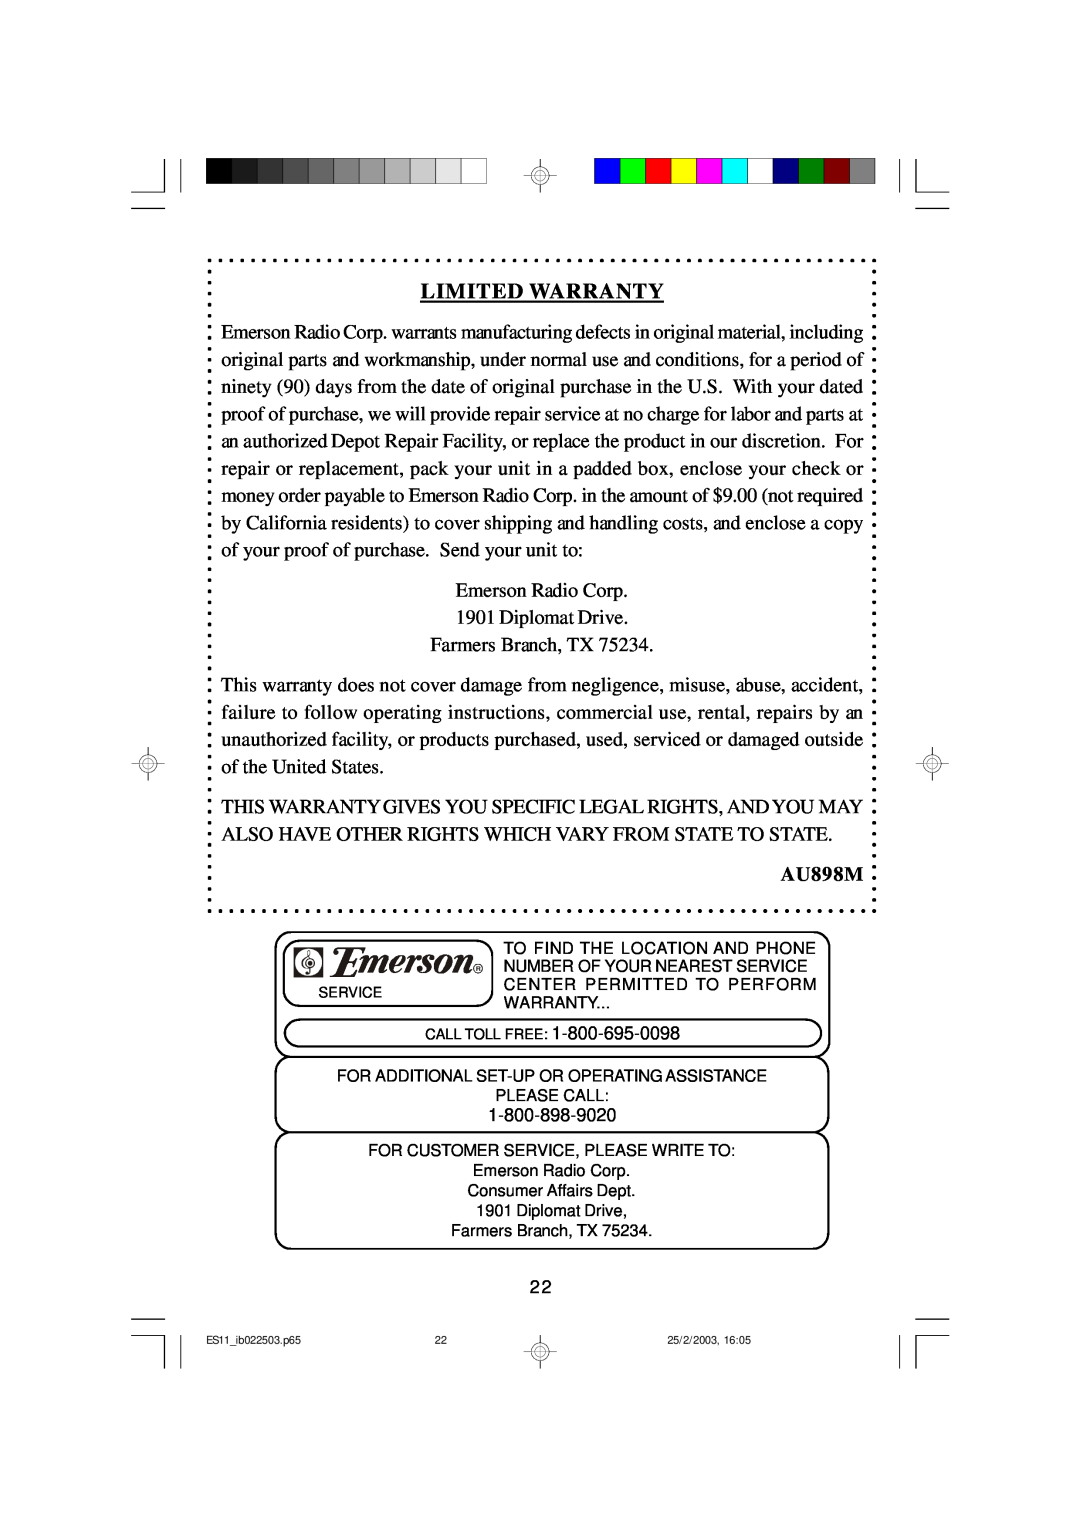 Emerson ES11 owner manual Limited Warranty, AU898M 